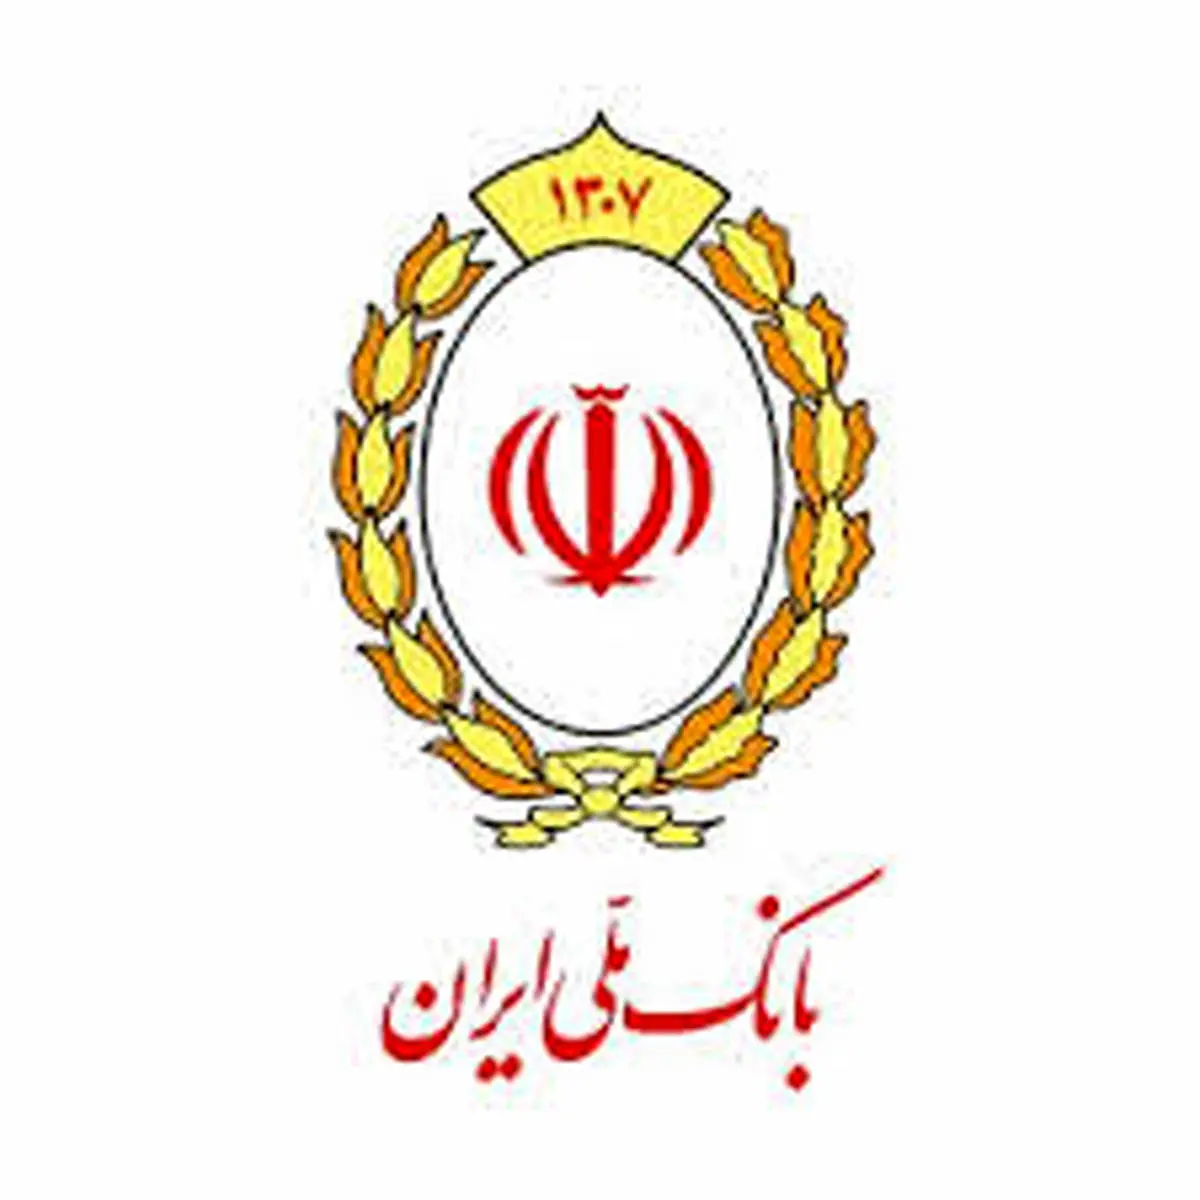 ادعای سرمایه گذاری بانک ملی ایران در دبی صحت ندارد

